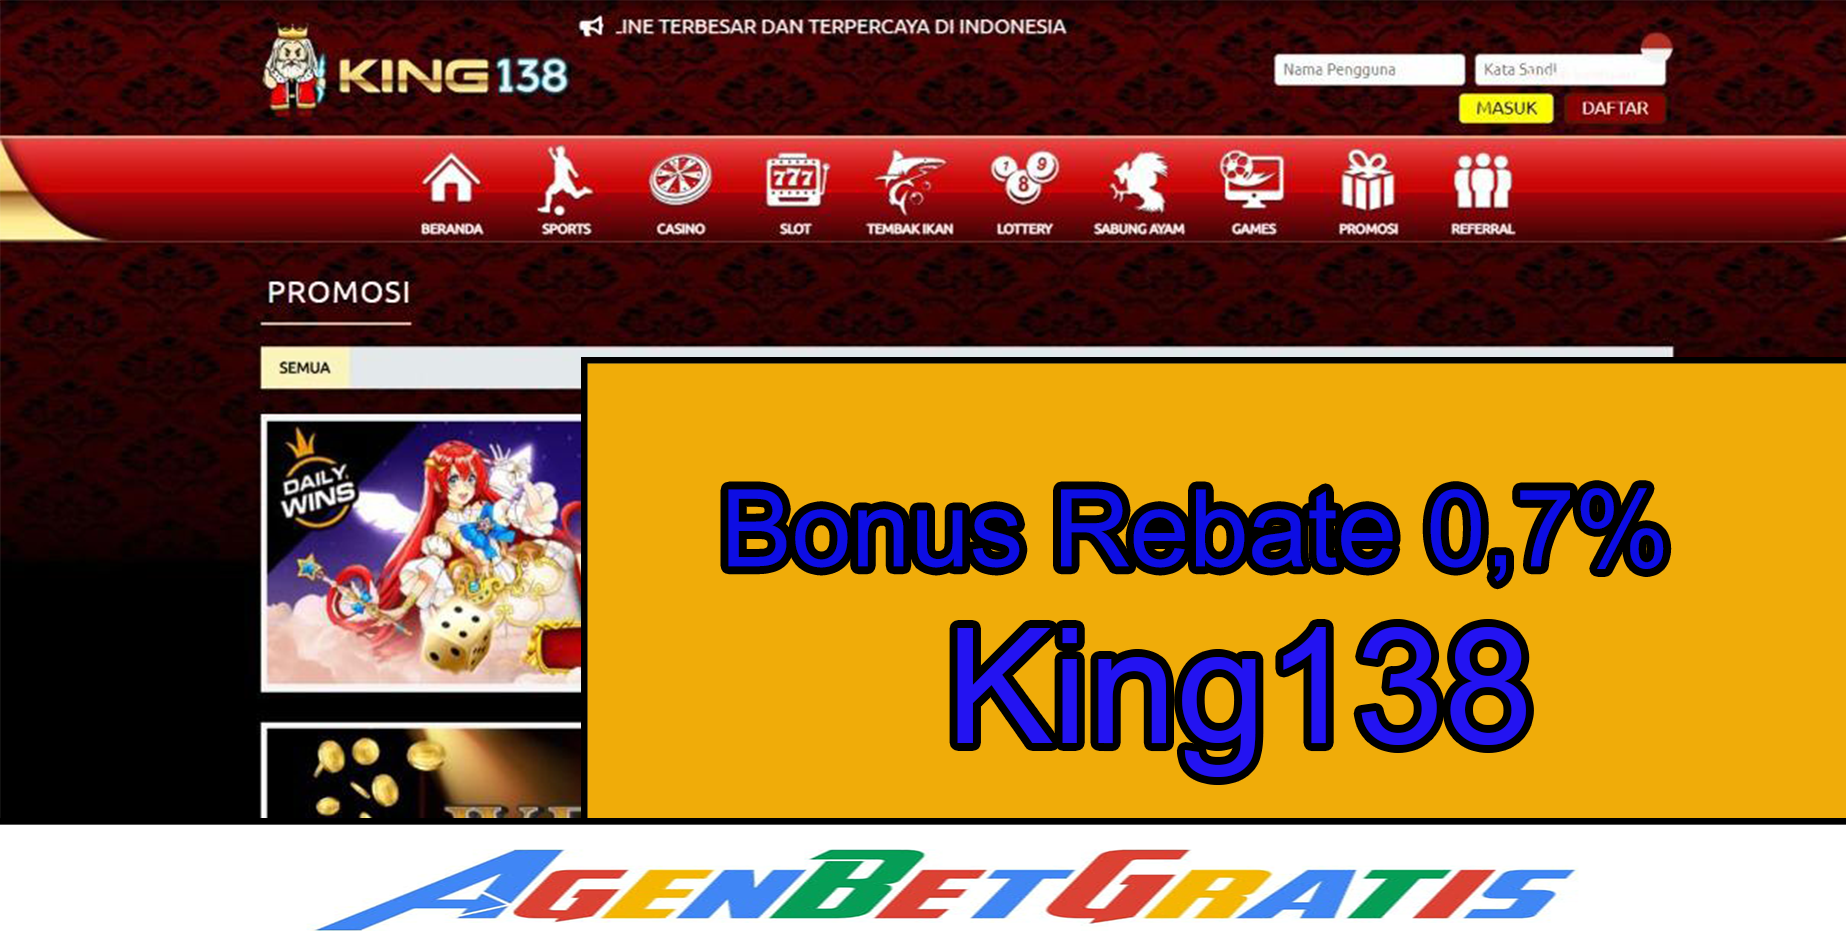 KING138 - Bonus Rebate 0,7%